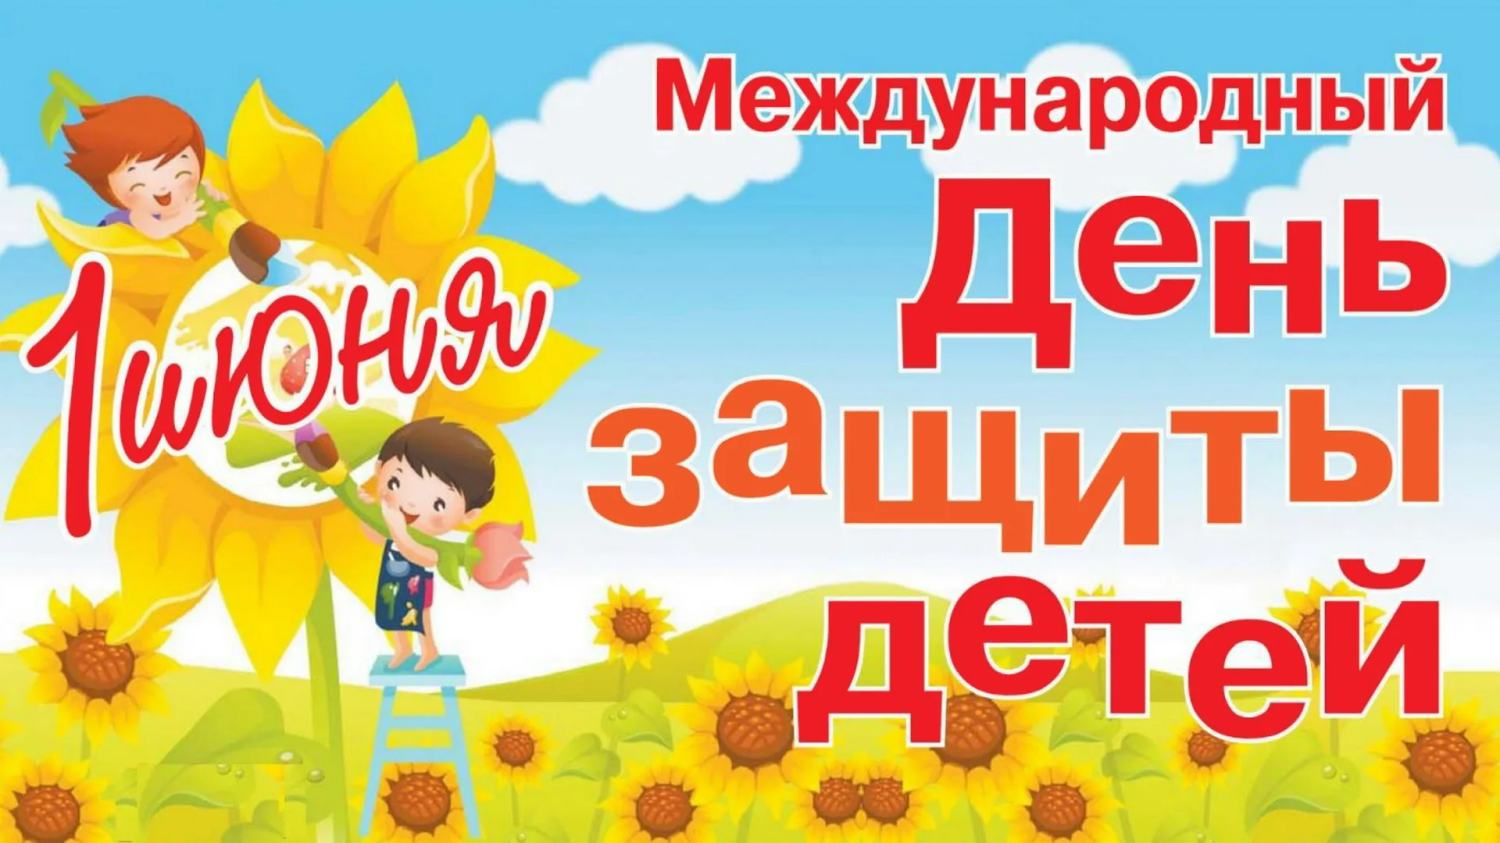 Глава Вадинского района Михаил Буслаев поздравляет с Международным днем защиты детей